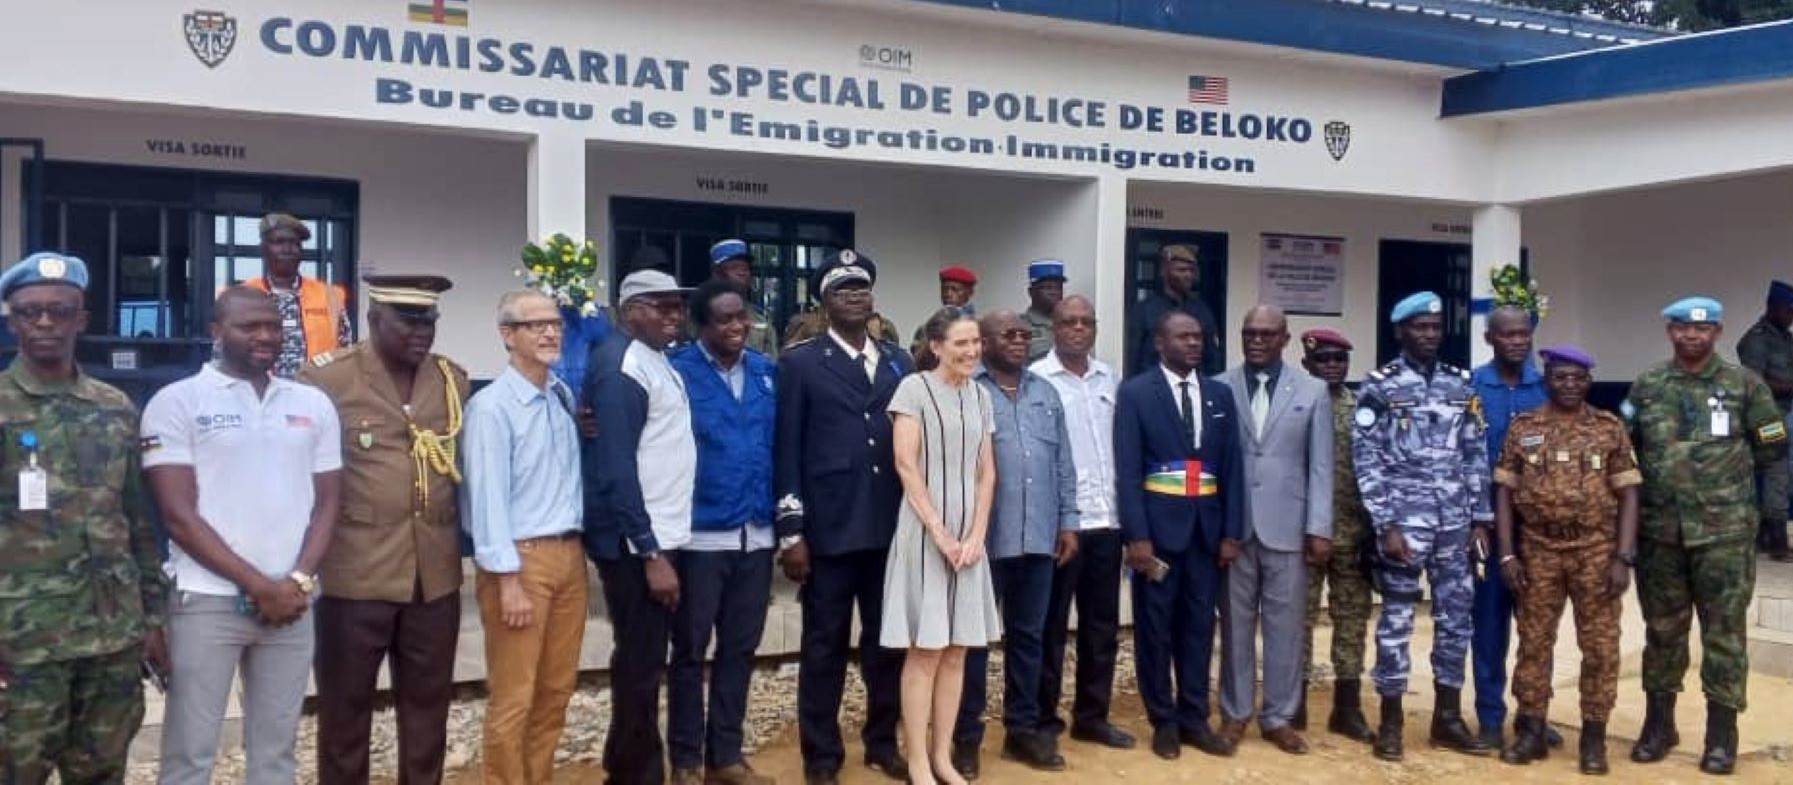 Centrafrique : le nouveau commissariat de police de Béloko inauguré grâce à l’appui des Etats-Unis